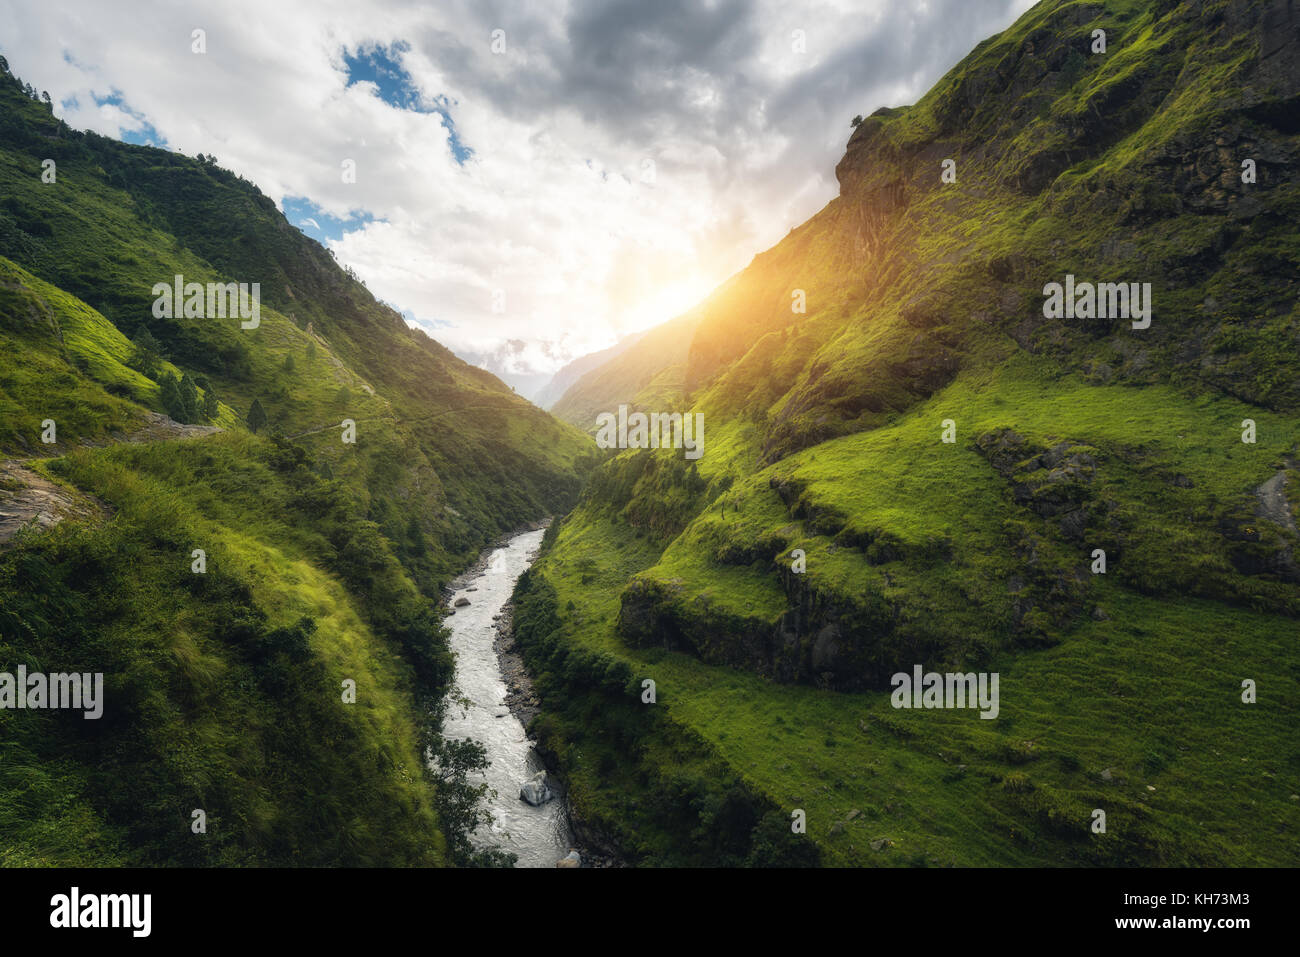 Avec une vue sur les montagnes de l'Himalaya couvert d'herbe verte, rivière, prairie et forêt, ciel bleu avec des nuages, le soleil et les pierres dans l'eau en automne au Népal Banque D'Images